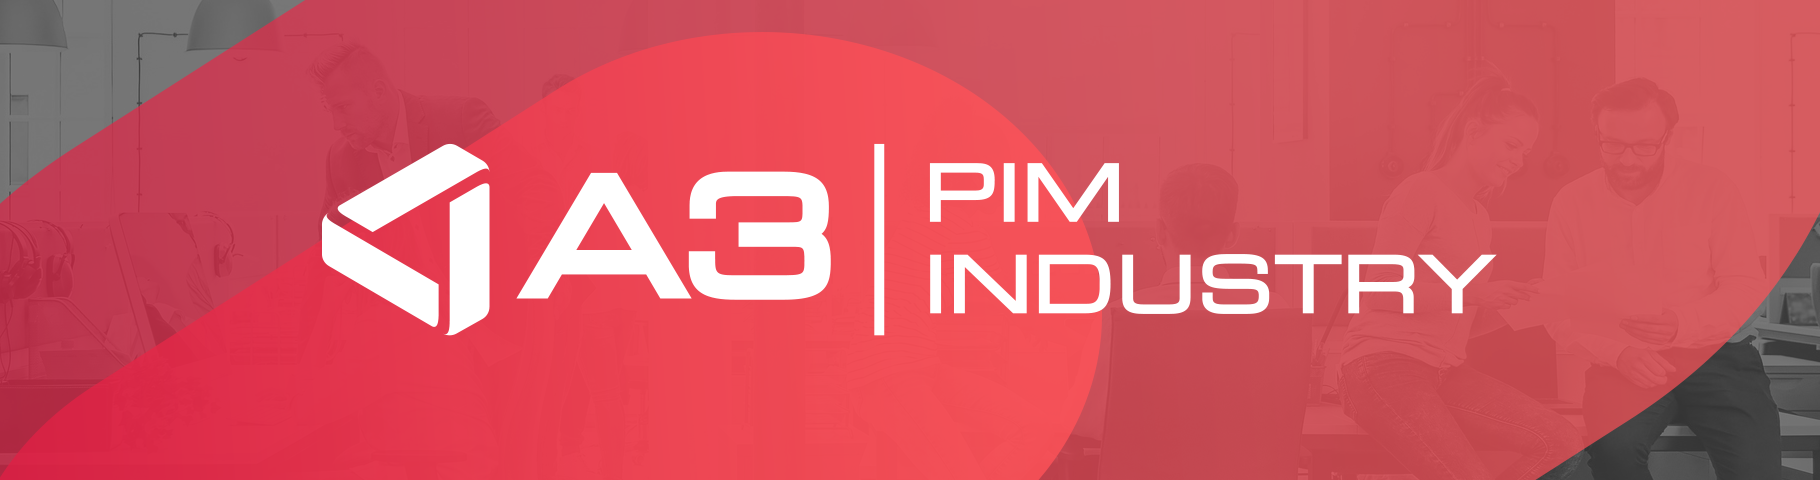 Avis A3 | PIM INDUSTRY : Augmentez votre performance business par le PIM - Appvizer